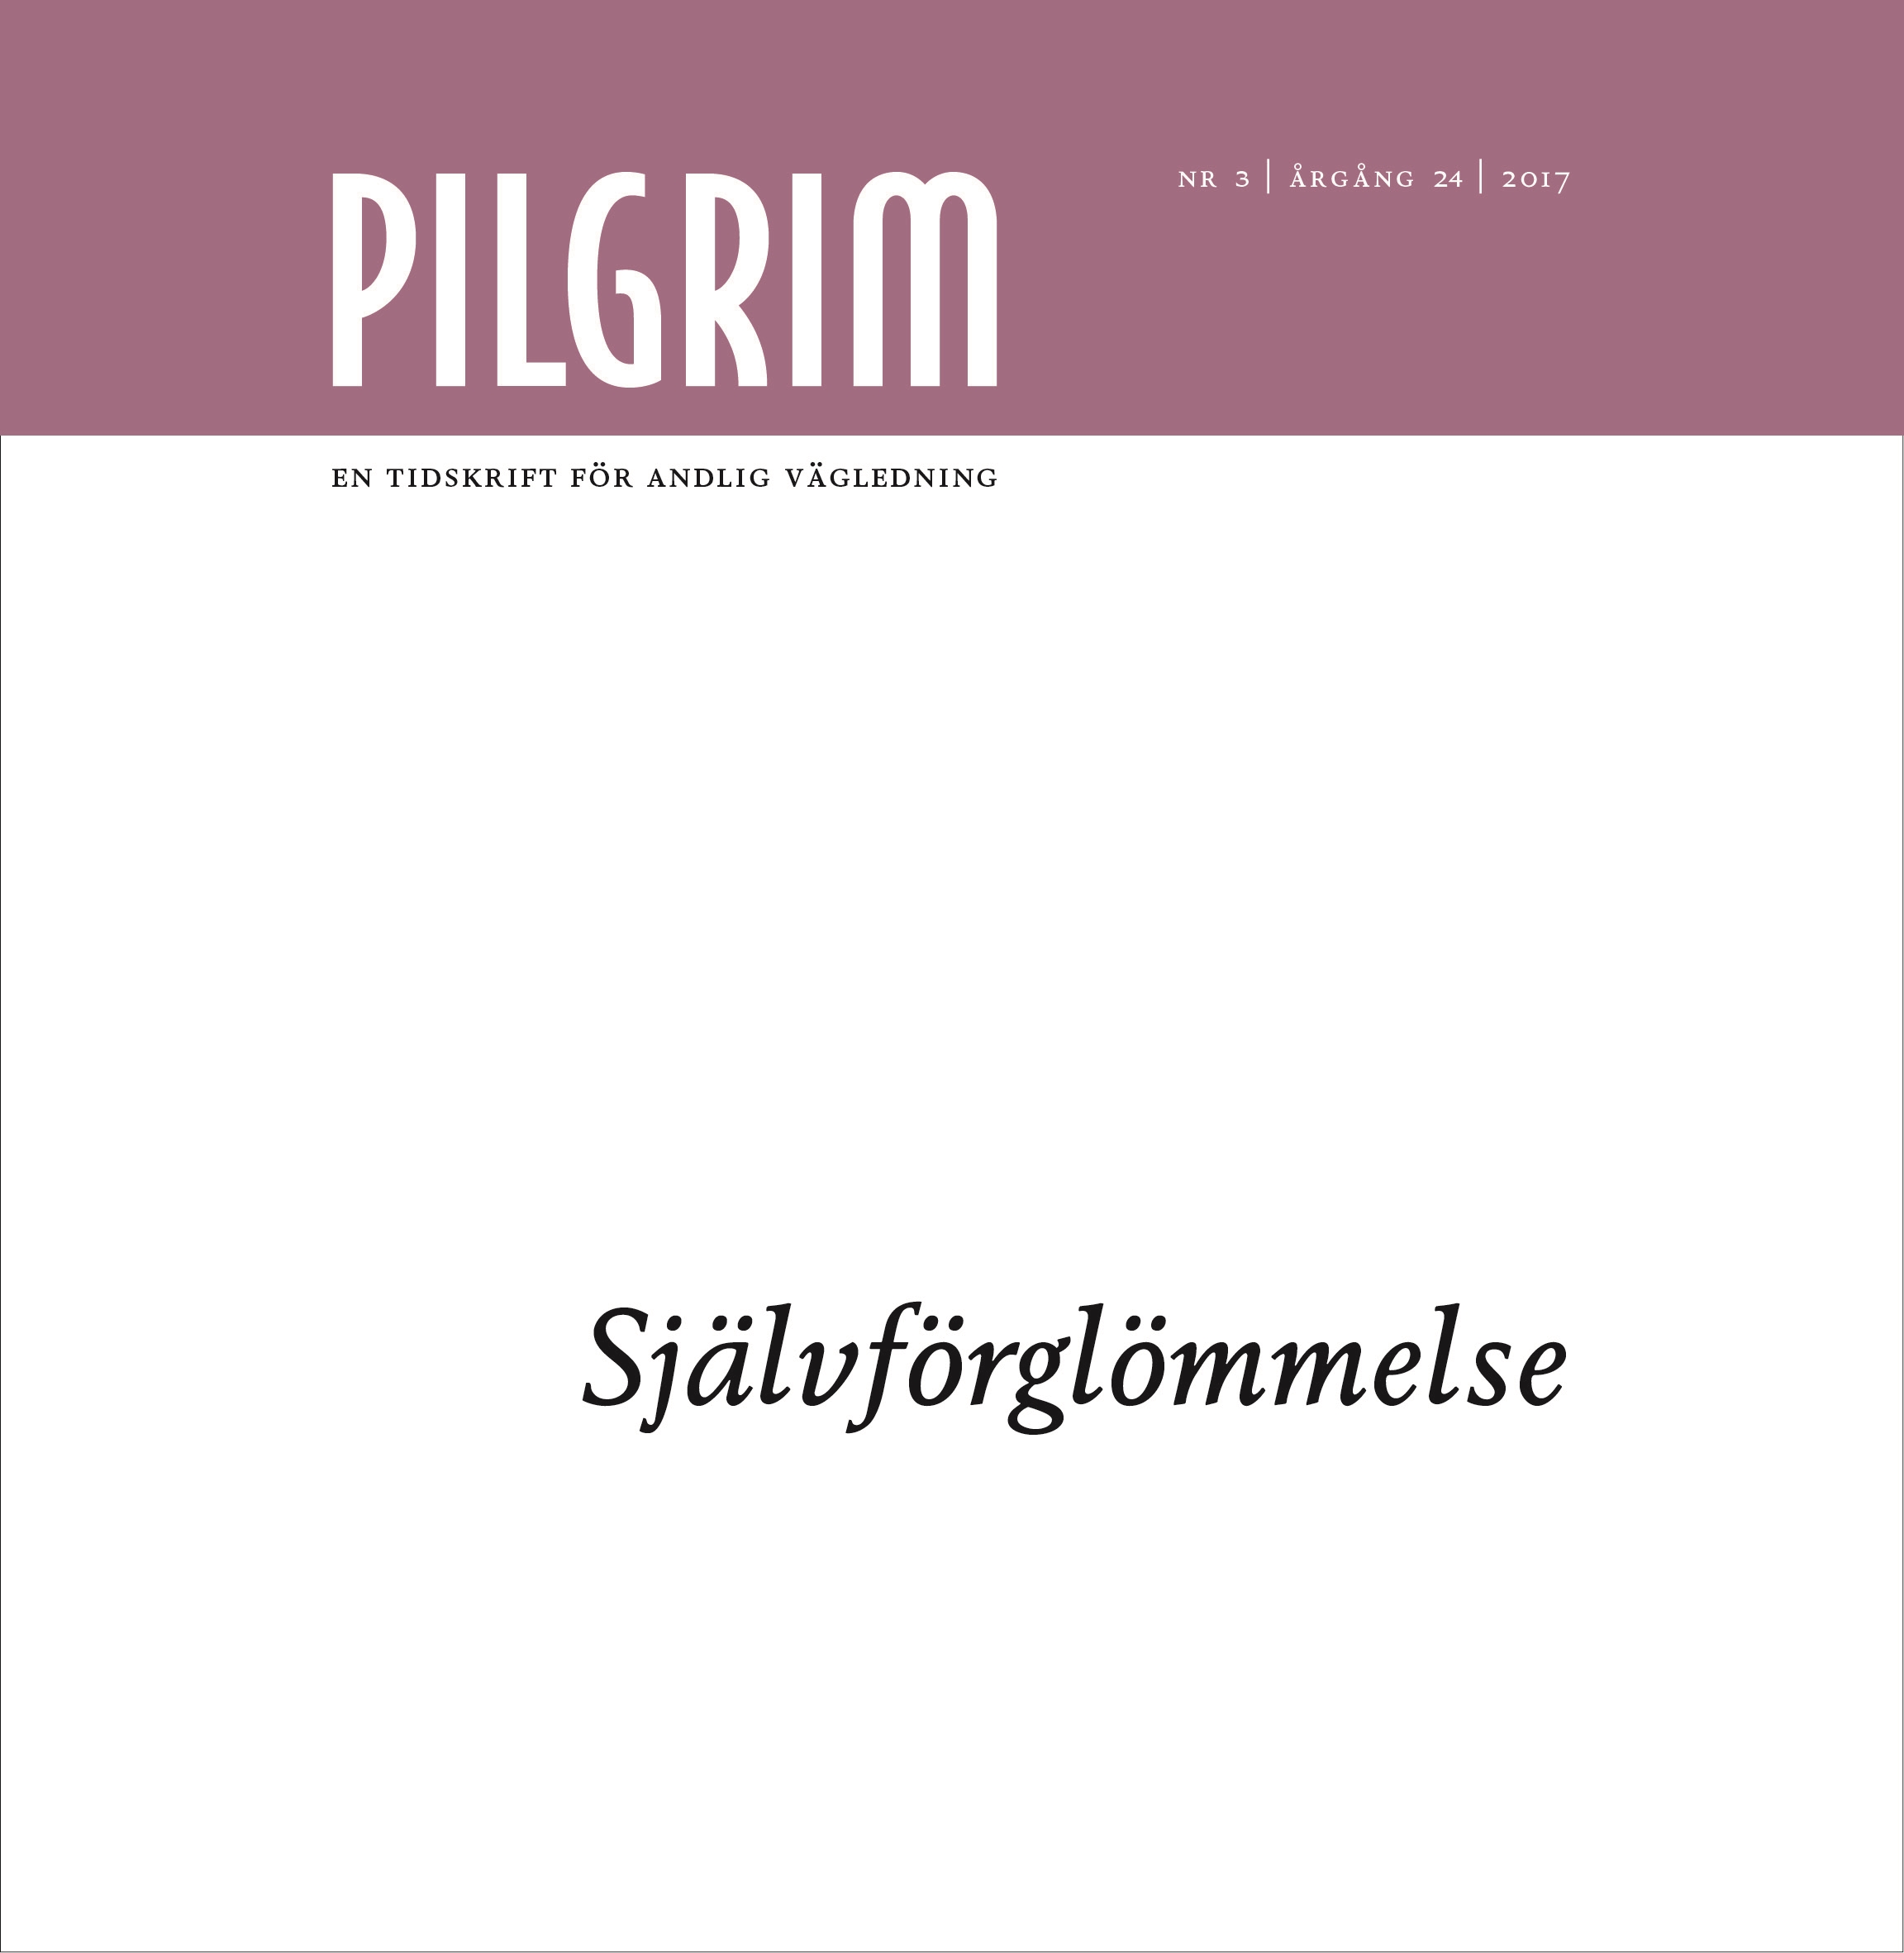 Pilgrim frams 2017-3a